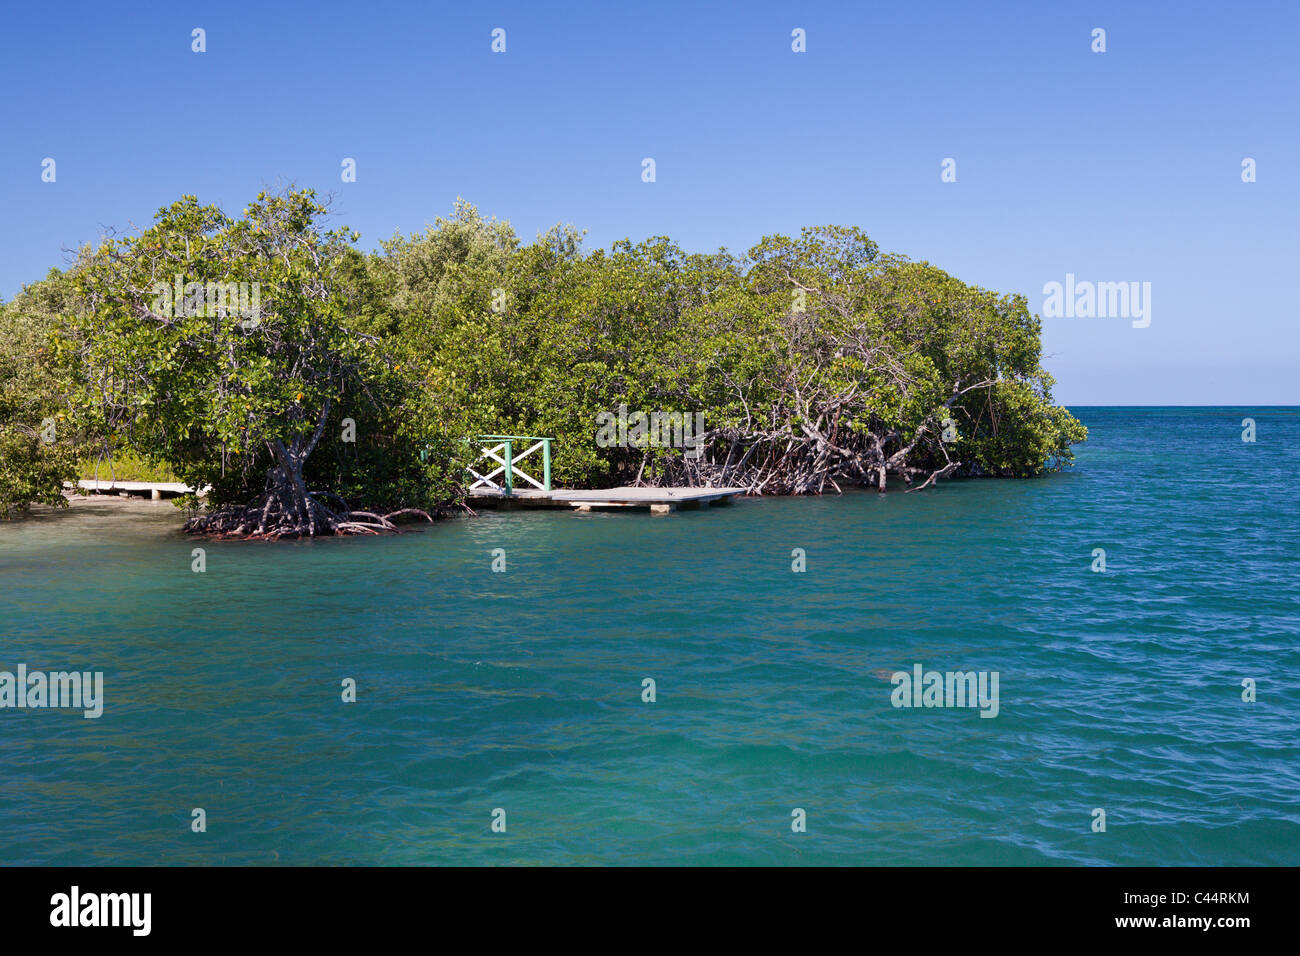 Mangroves of National Park Estero Hondo, Dominican Republic Stock Photo